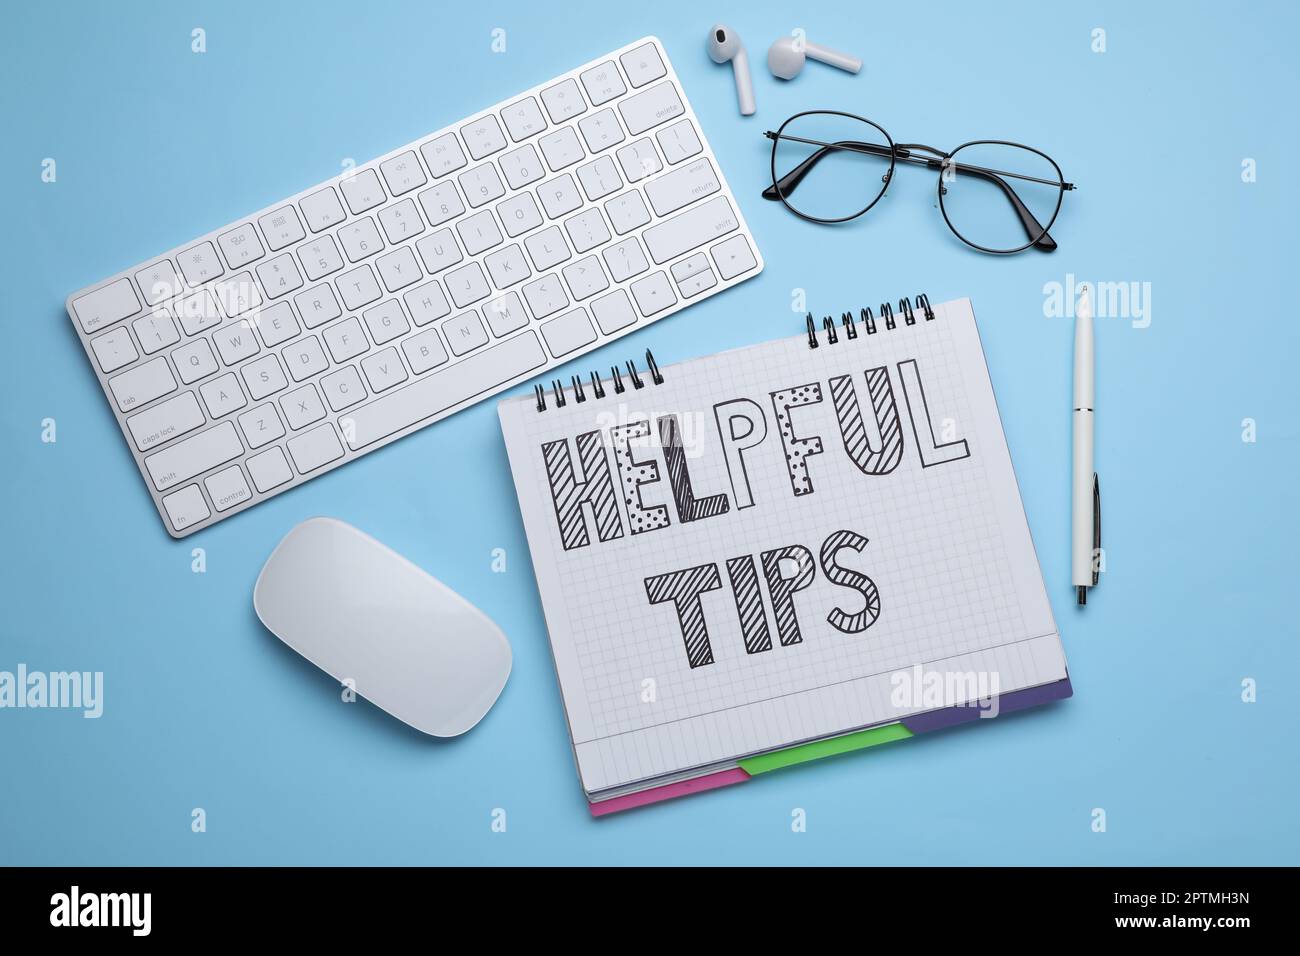 Hilfreiche Tipps. Flaches Design mit Notebook und Computertastatur auf hellblauem Hintergrund Stockfoto